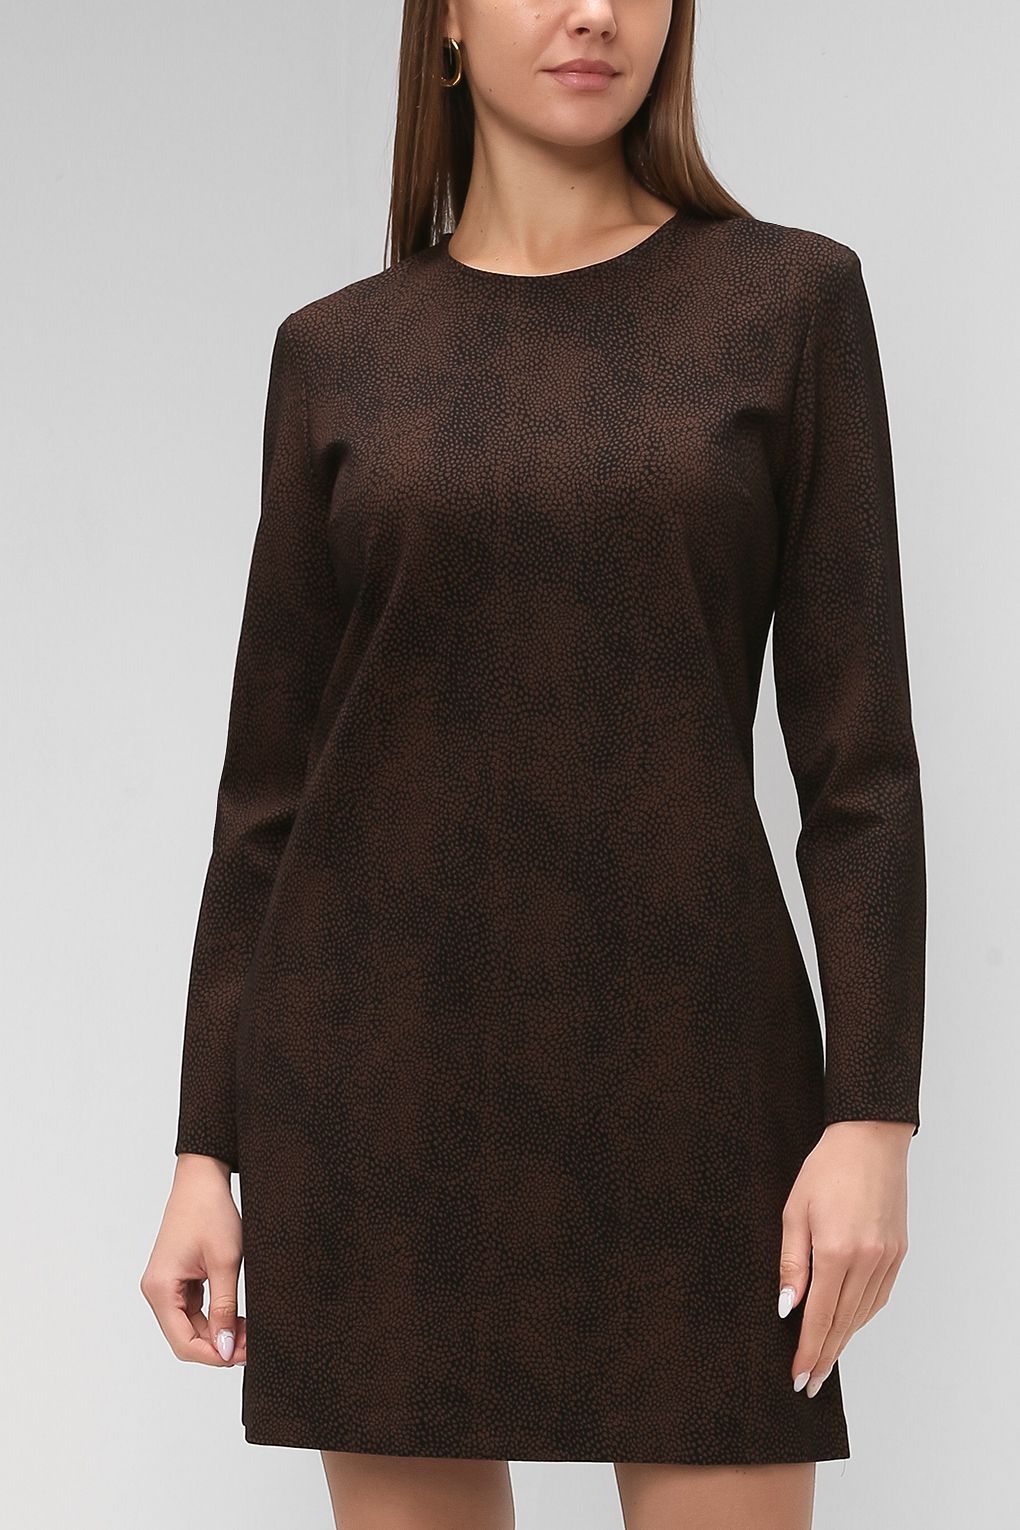 Платье женское PAOLA RAY PR220-3095 коричневое S